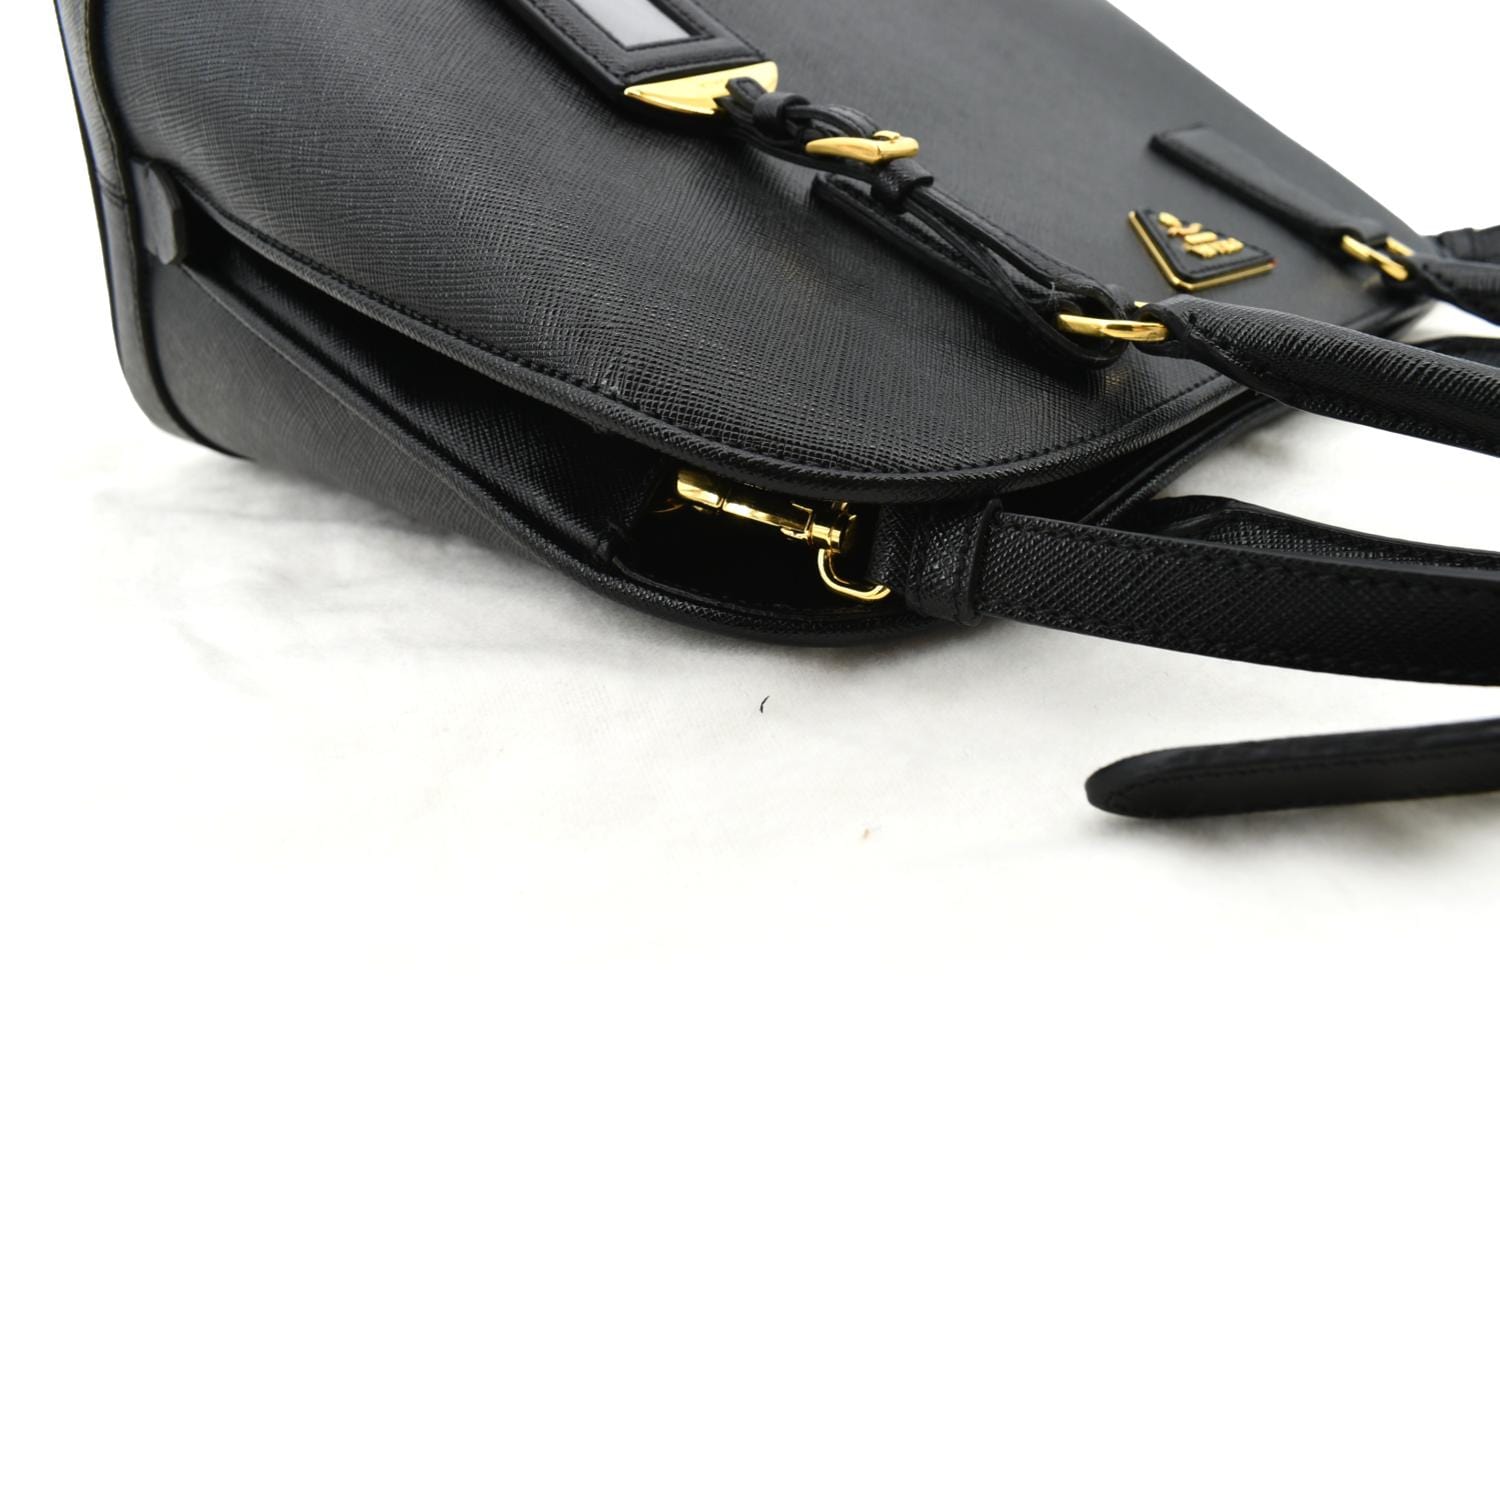 Prada Medium Promenade Bag in Saffiano Leather